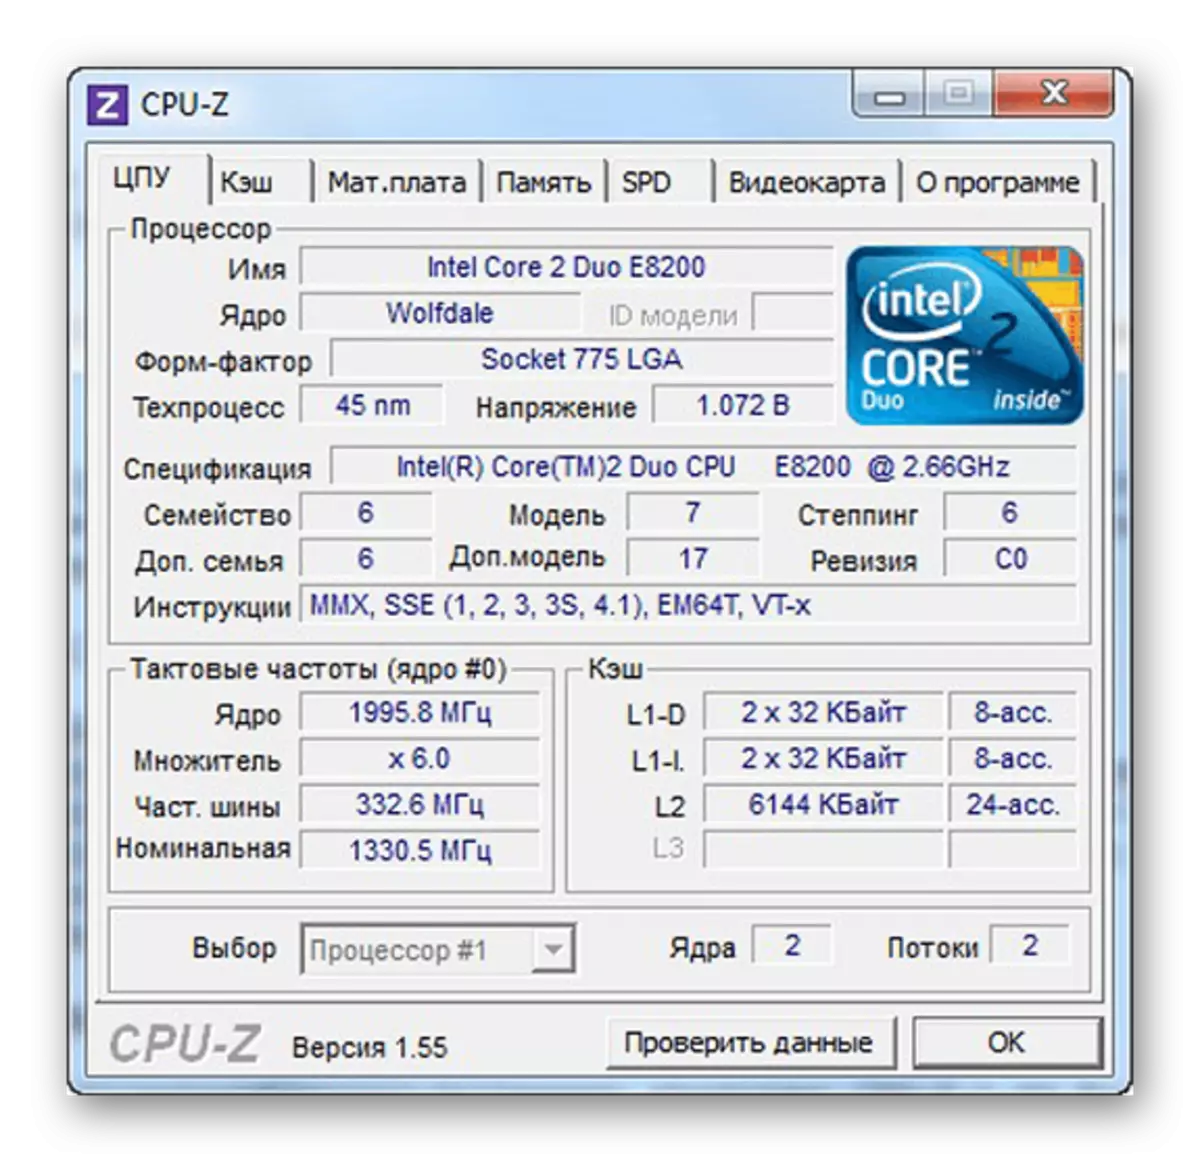 Кор дар CPU-Z